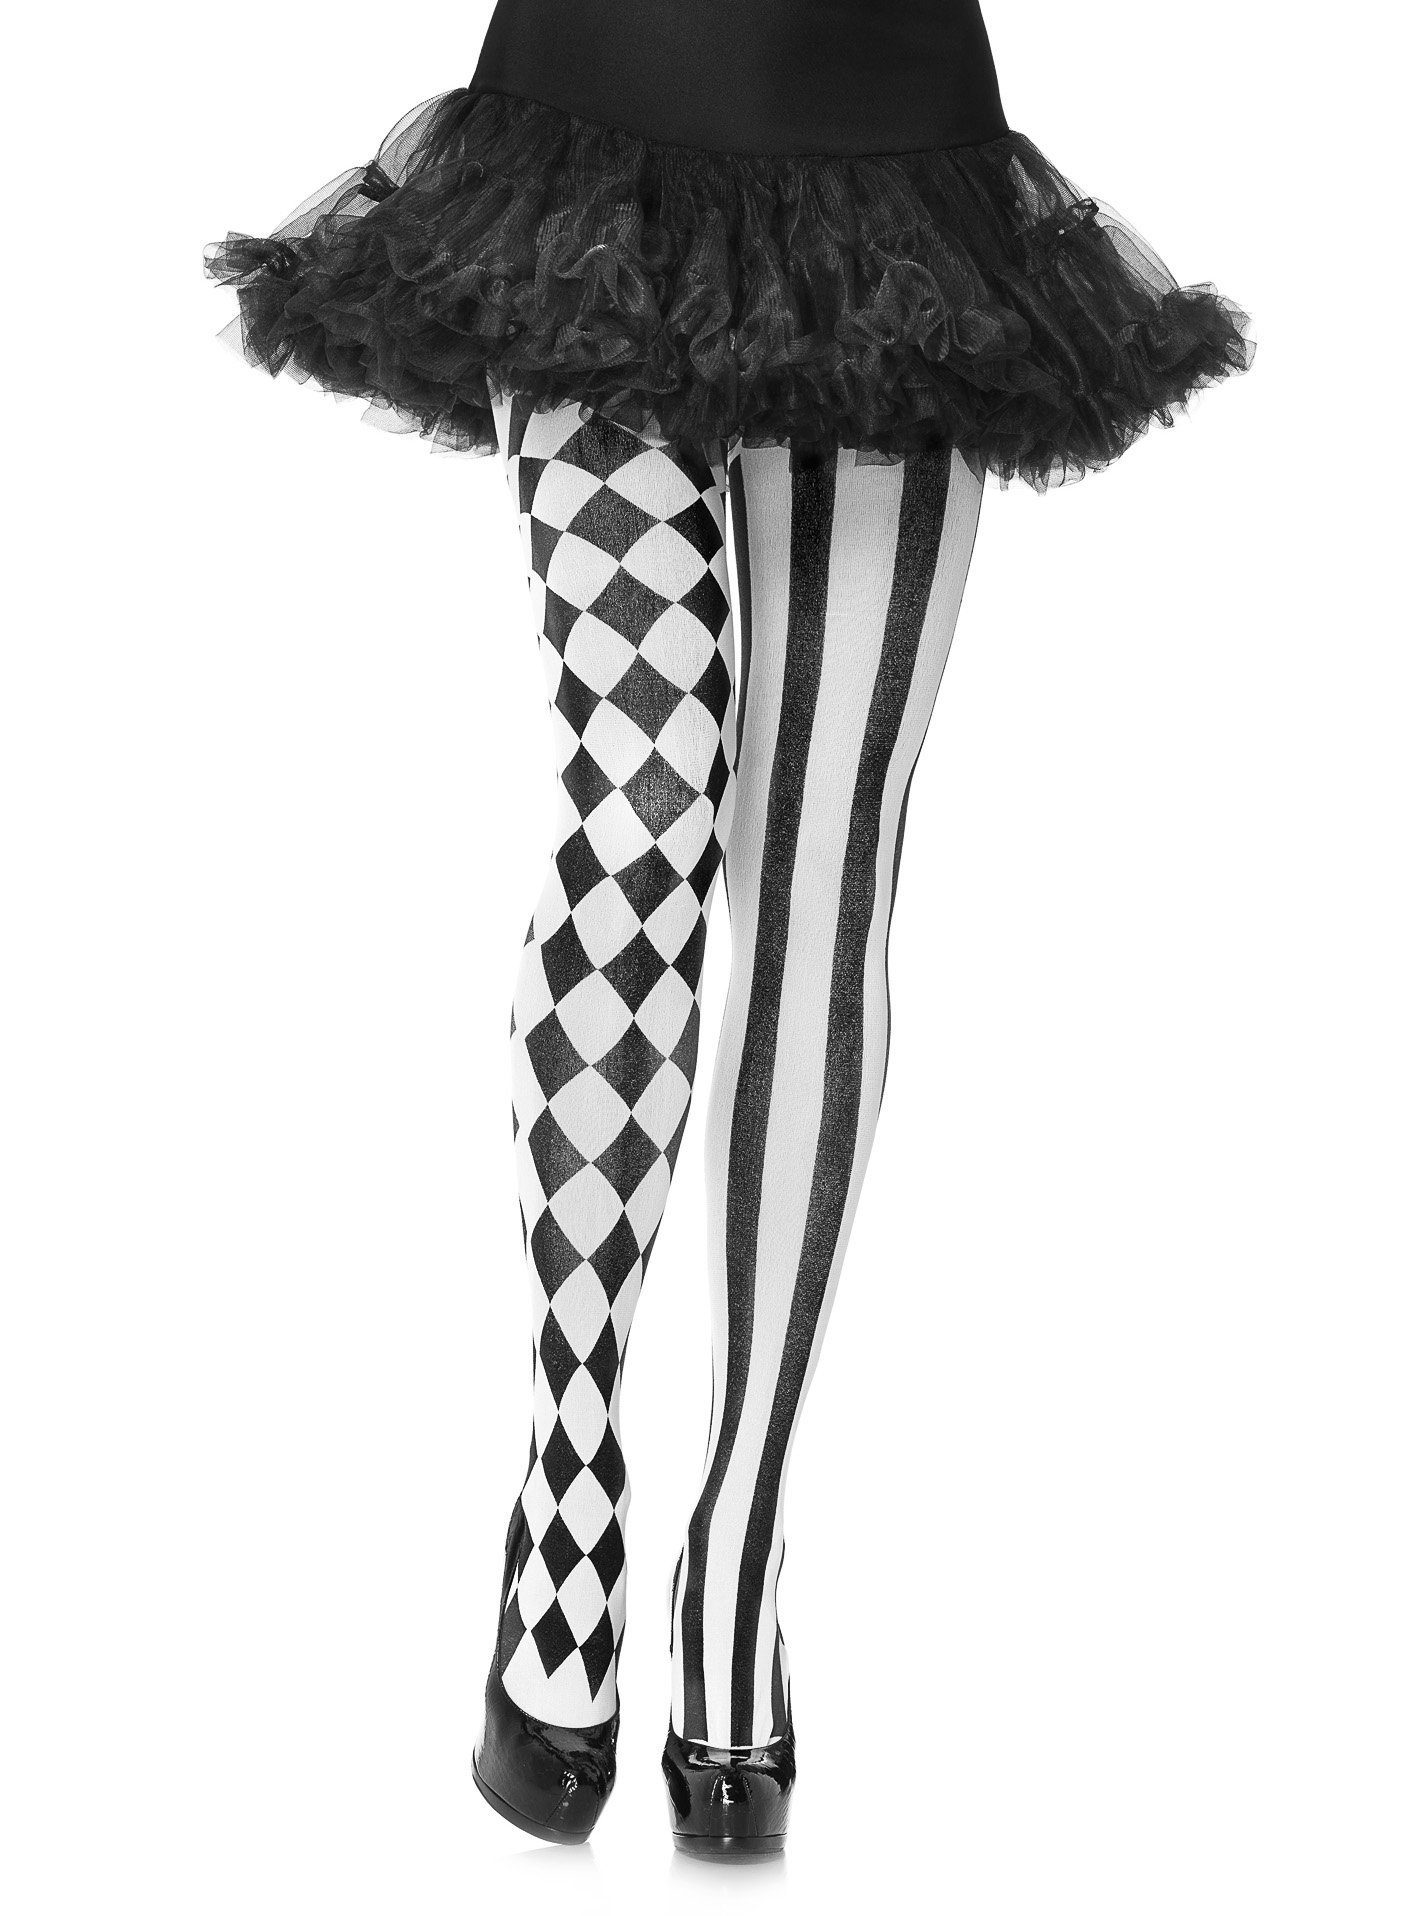 Leg Strumpfhose mit das Harlekinmuster, Eleganz und Accessoire, Kostüm vereint Stylishes Stil Avenue